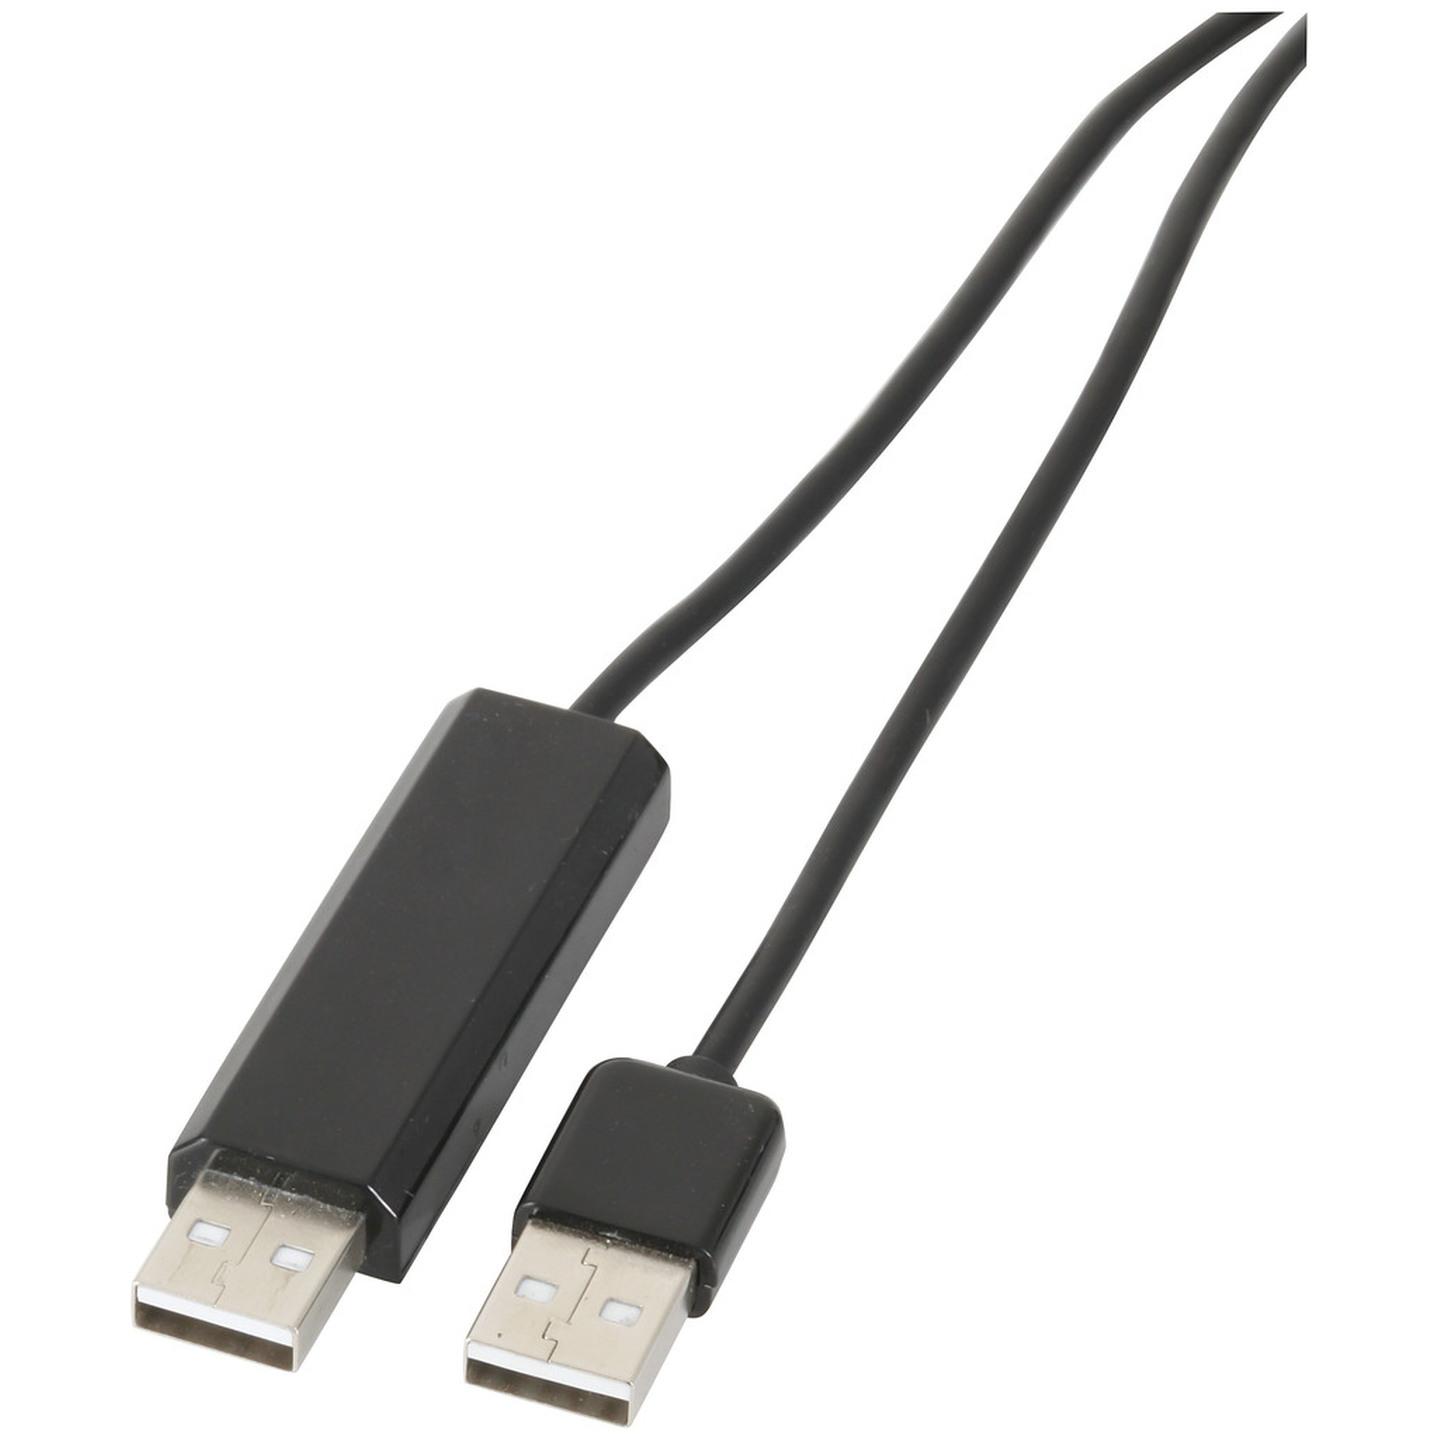 USB KVM & Data Transfer Cable